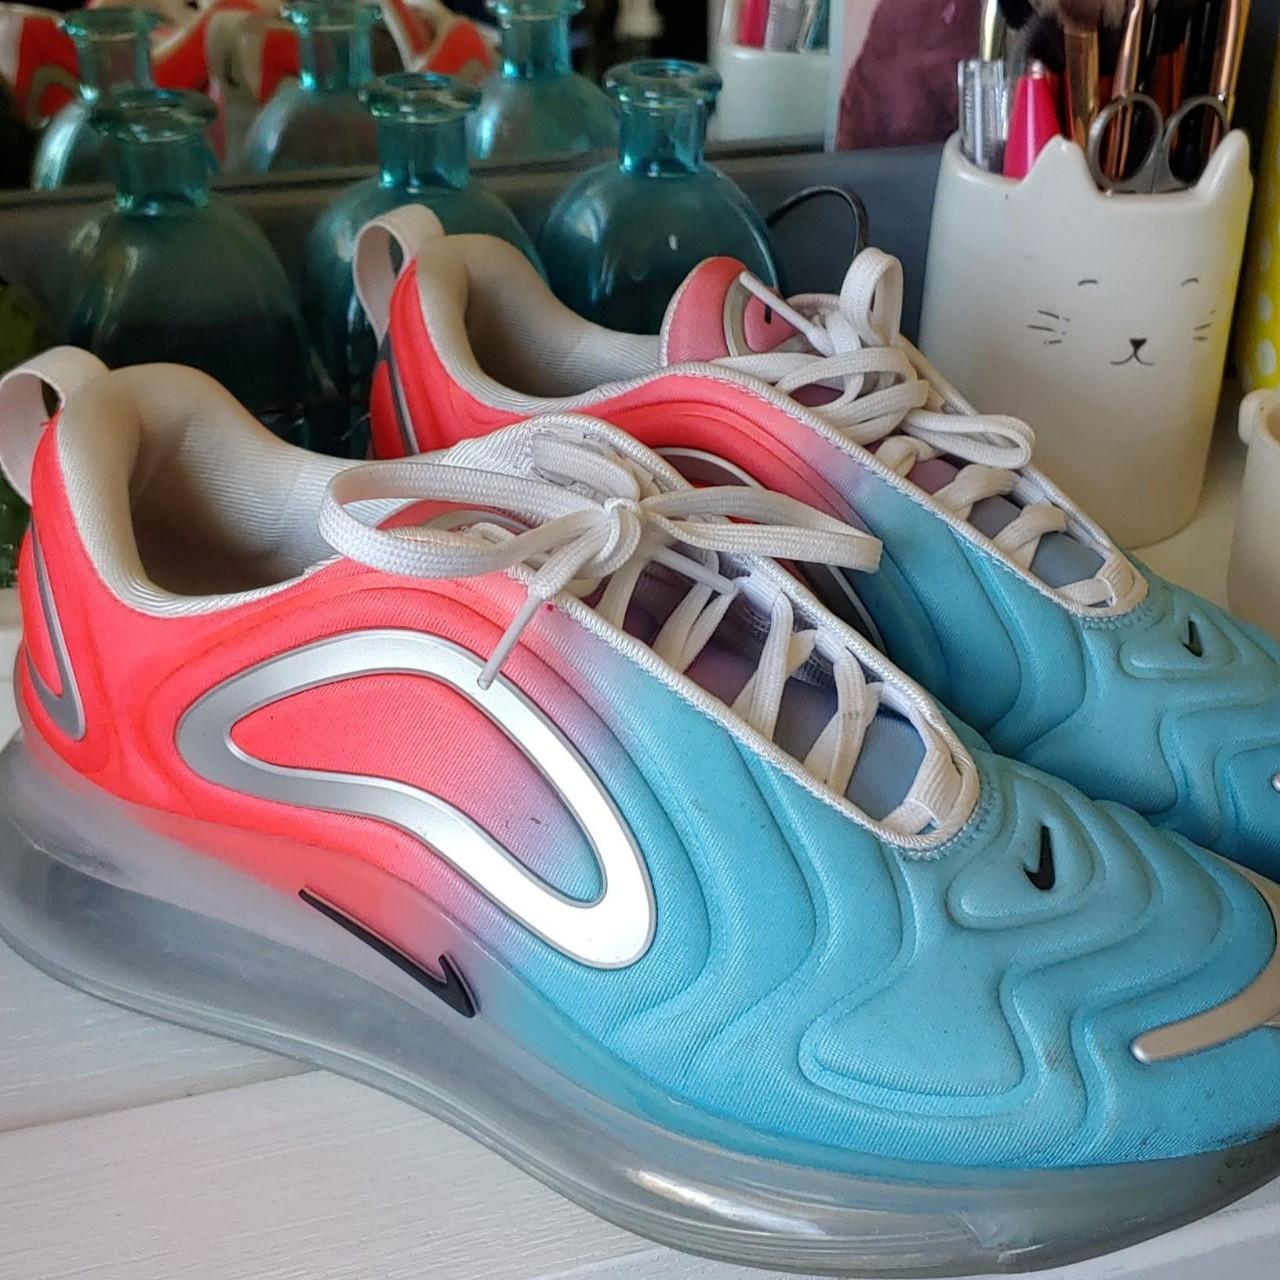 Great looking pair of Nike AirMax 720 Pink Sea Lava - Depop